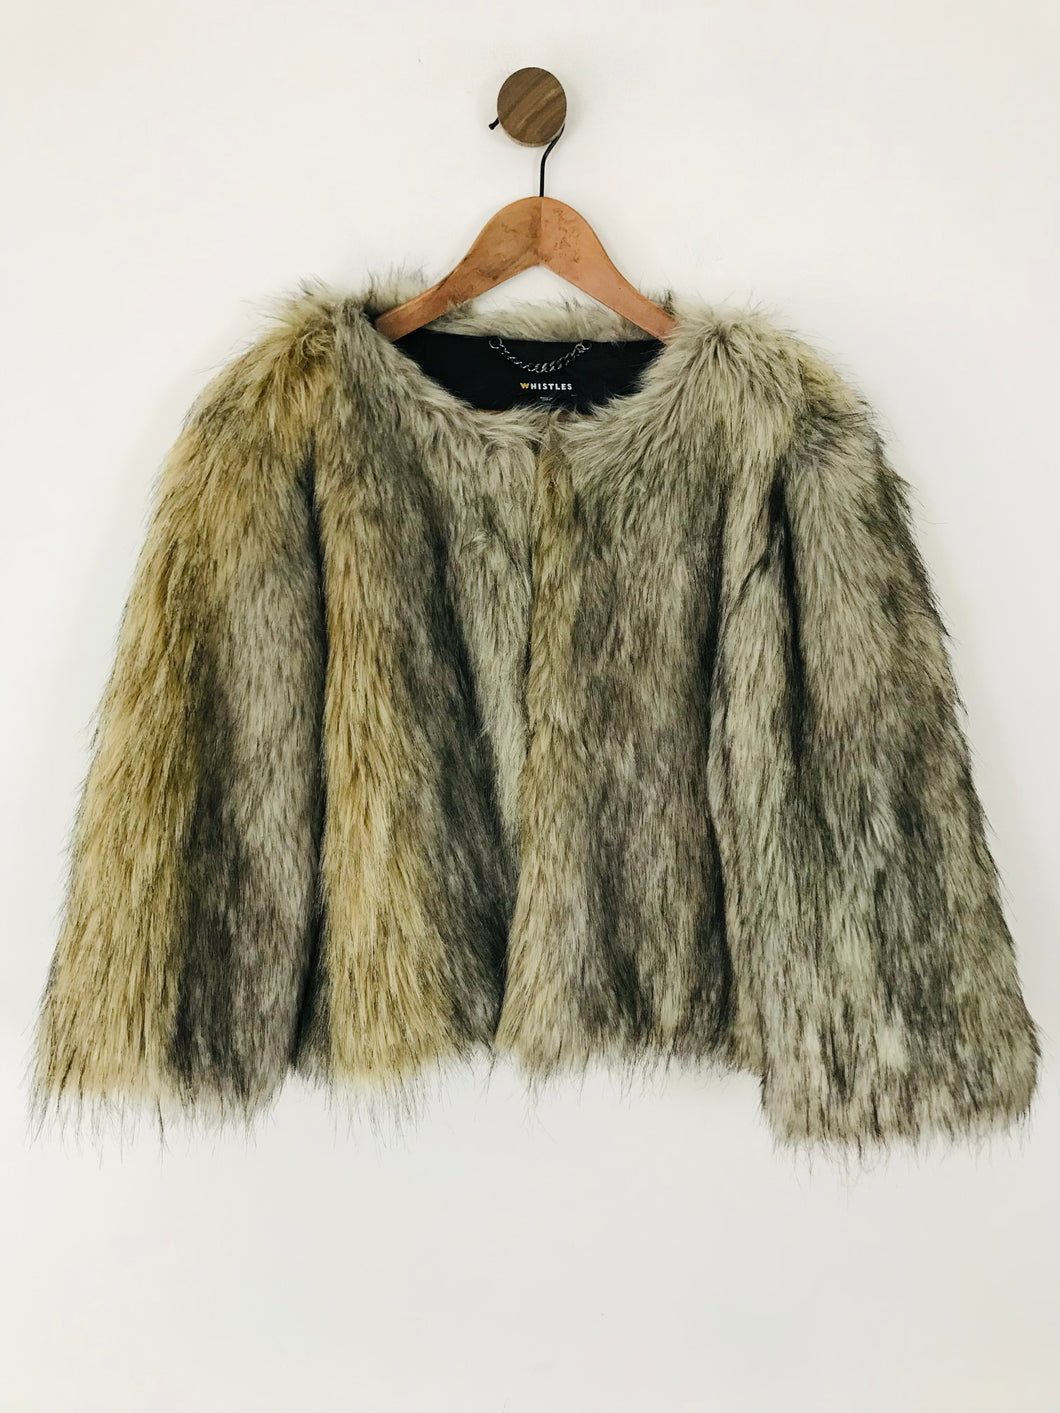 Whistles Women's Faux Fur Jacket Overcoat | L UK14 | Beige